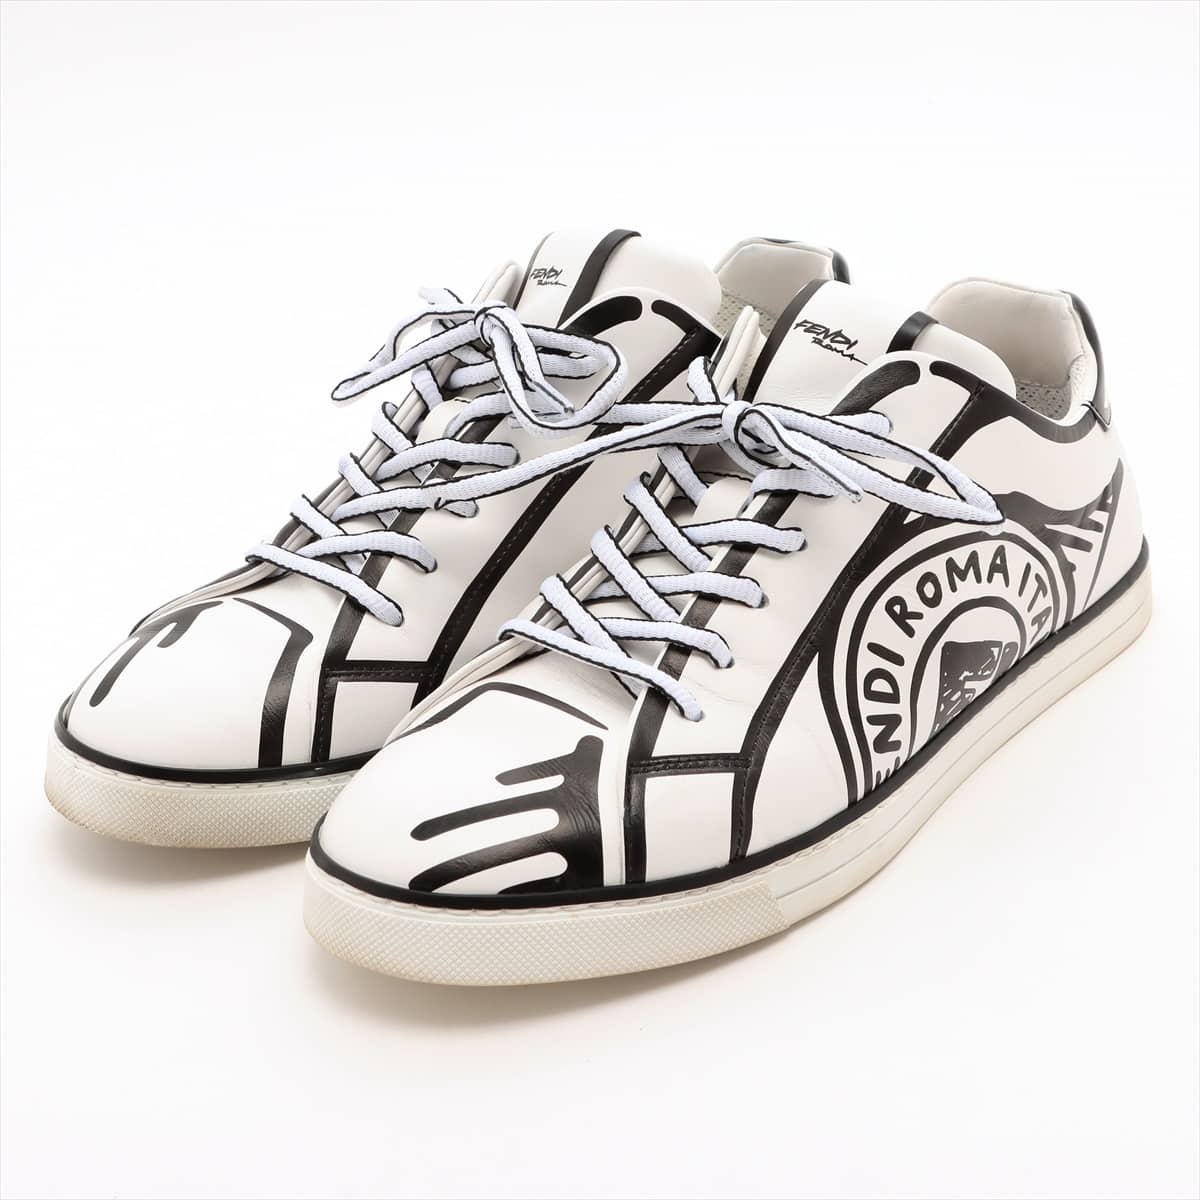 フェンディ レザー スニーカー 7 メンズ ホワイト Trompe L'Oeil Stamp Leather Sneakers